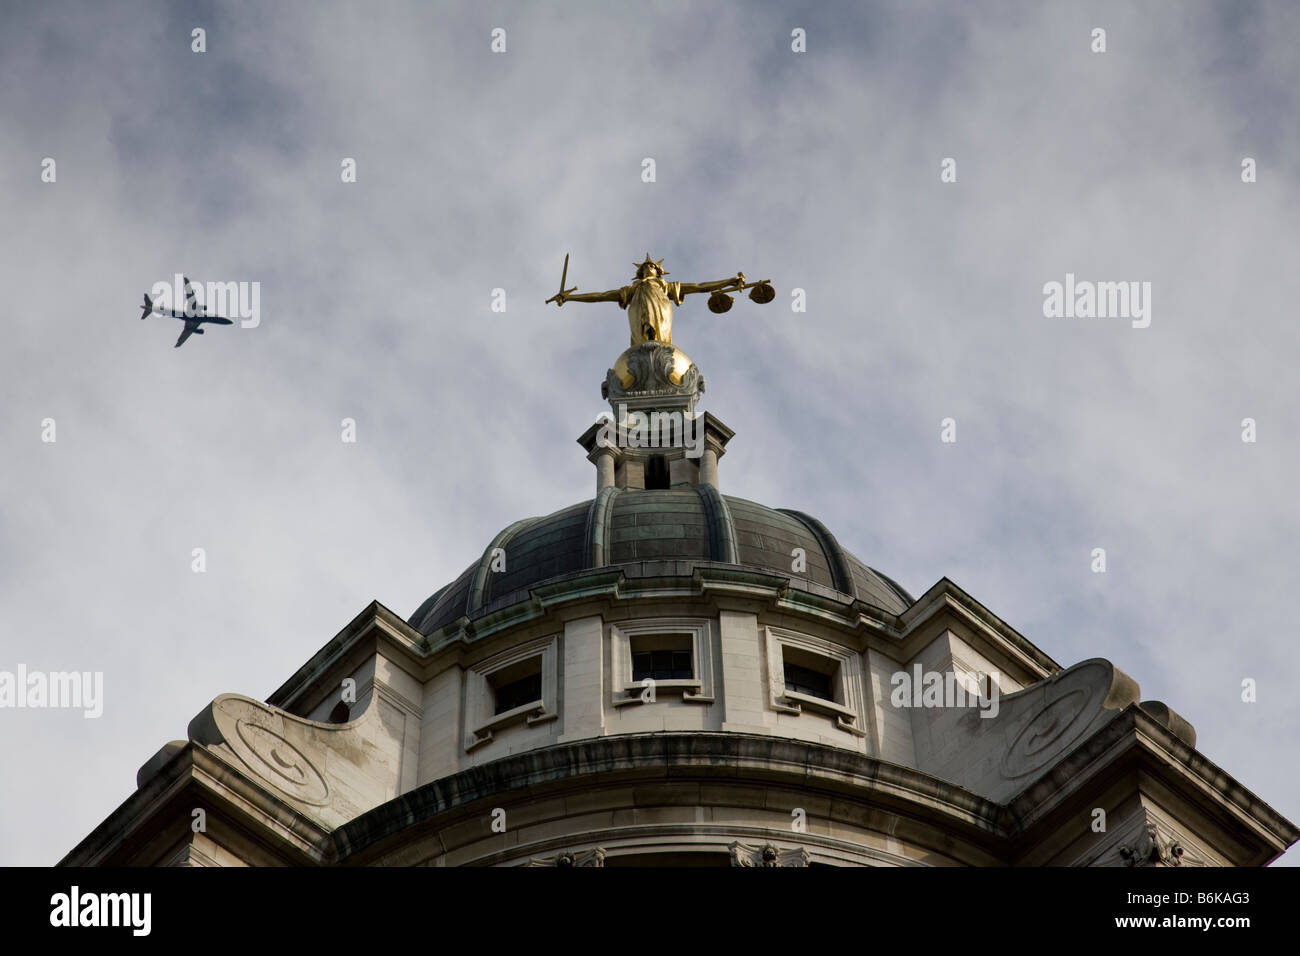 Statue de Dame Justice par le sculpteur britannique F W Pomeroy est situé au-dessus de la coupole de l'Old Bailey, London, Angleterre. Banque D'Images